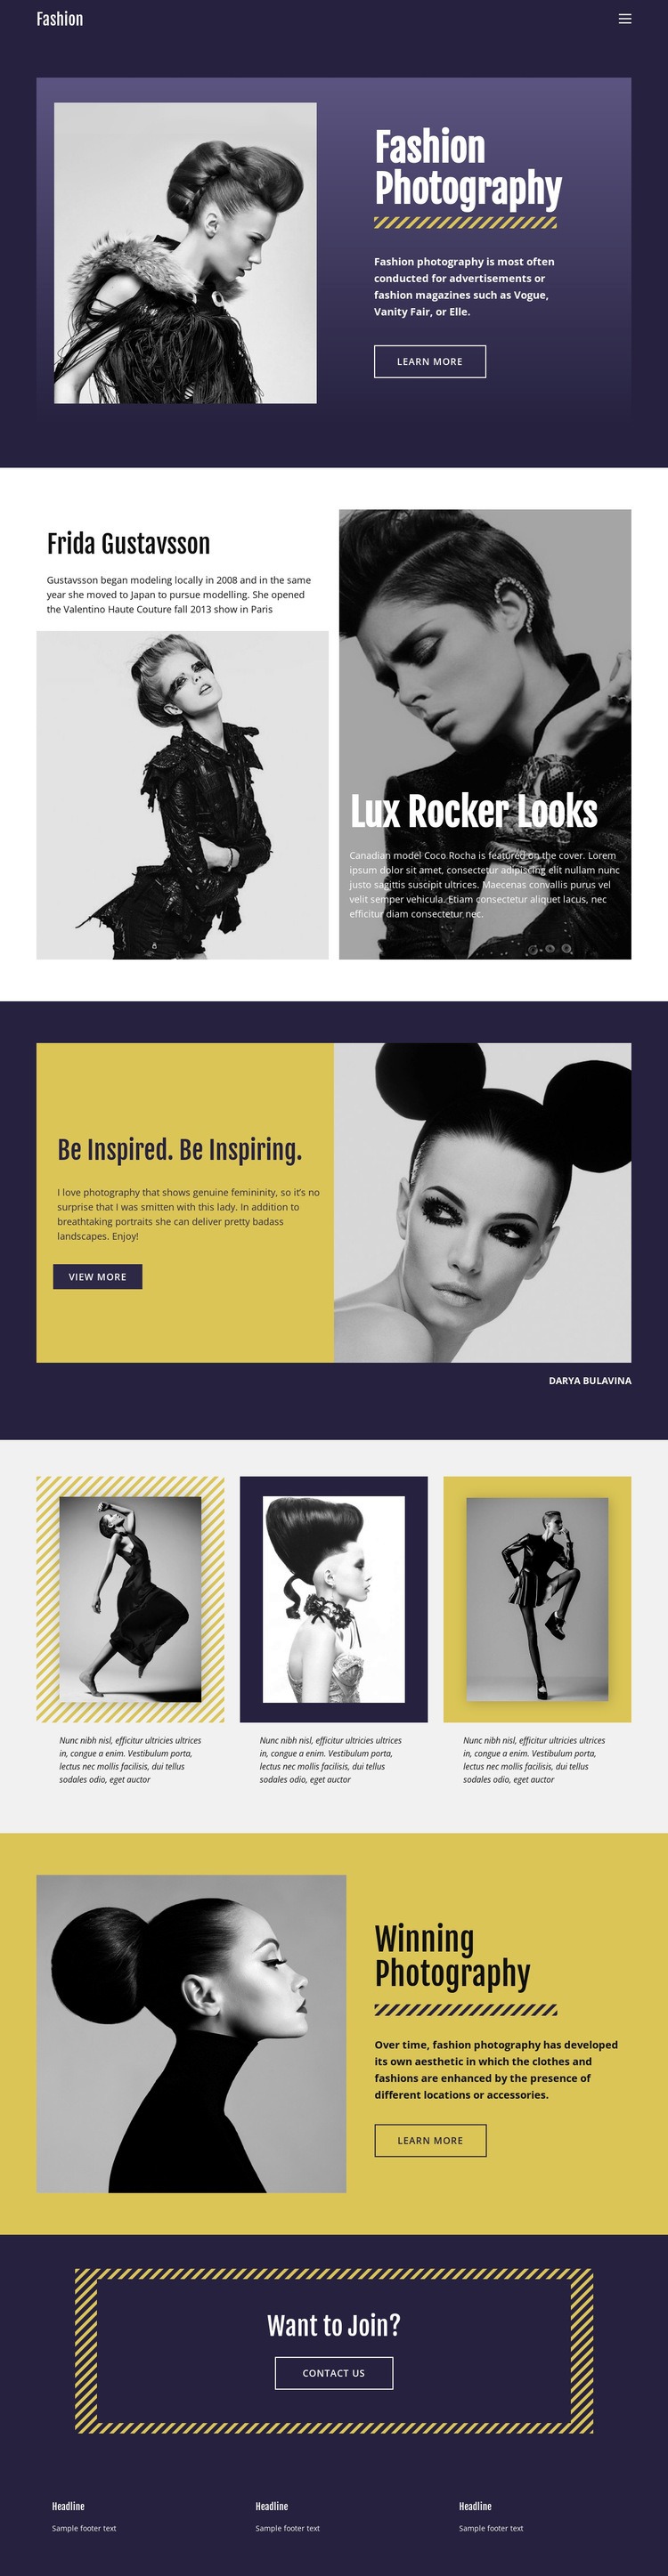 Modefotografering Klassisk stil Html webbplatsbyggare